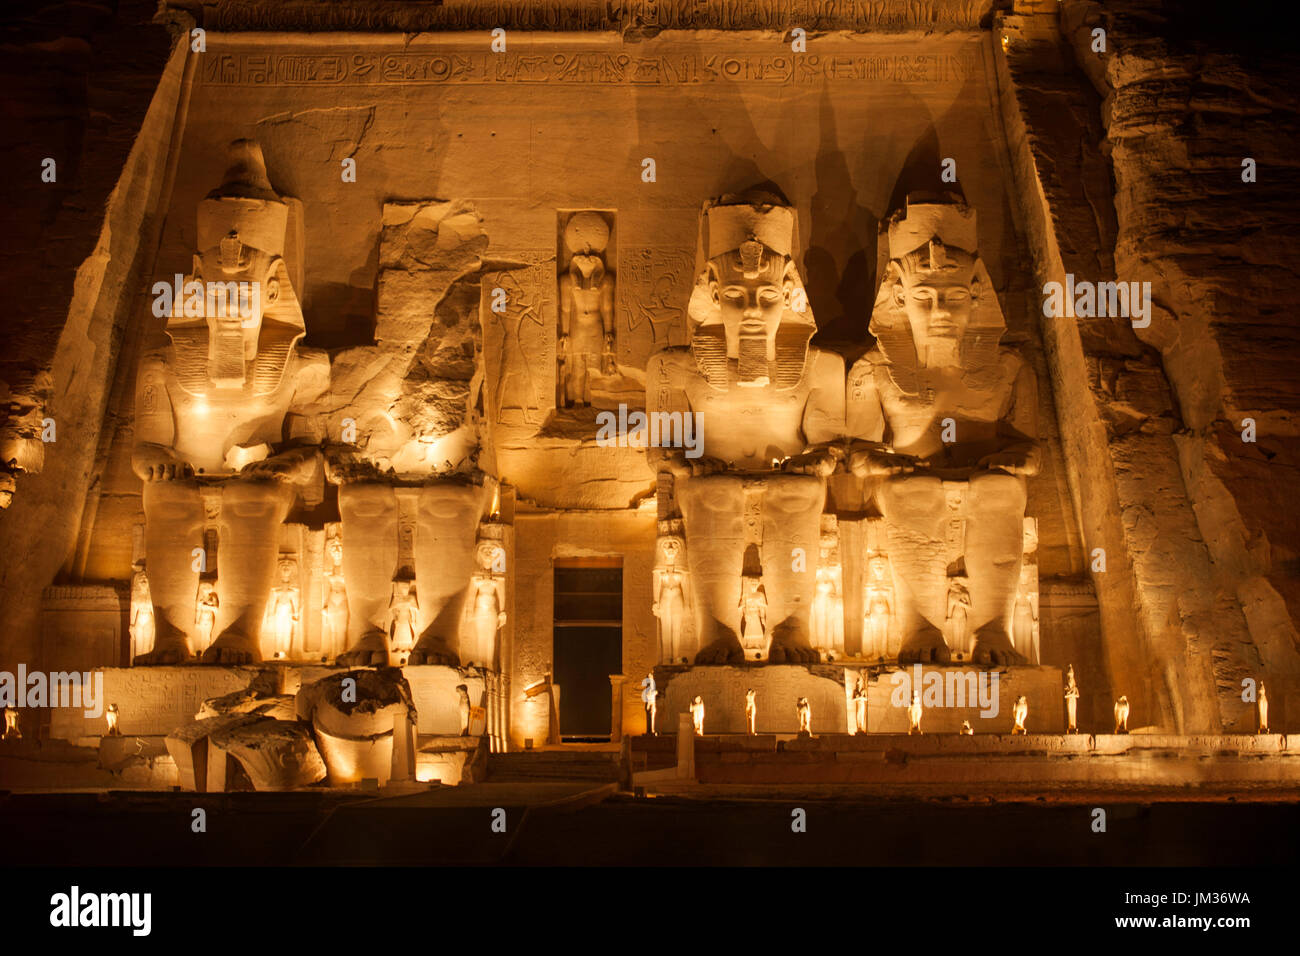 Aegypten, Abu Simbel, Kolossalstatuen vor dem Tempel von Ramses II. während der Sound & Light Show Stock Photo